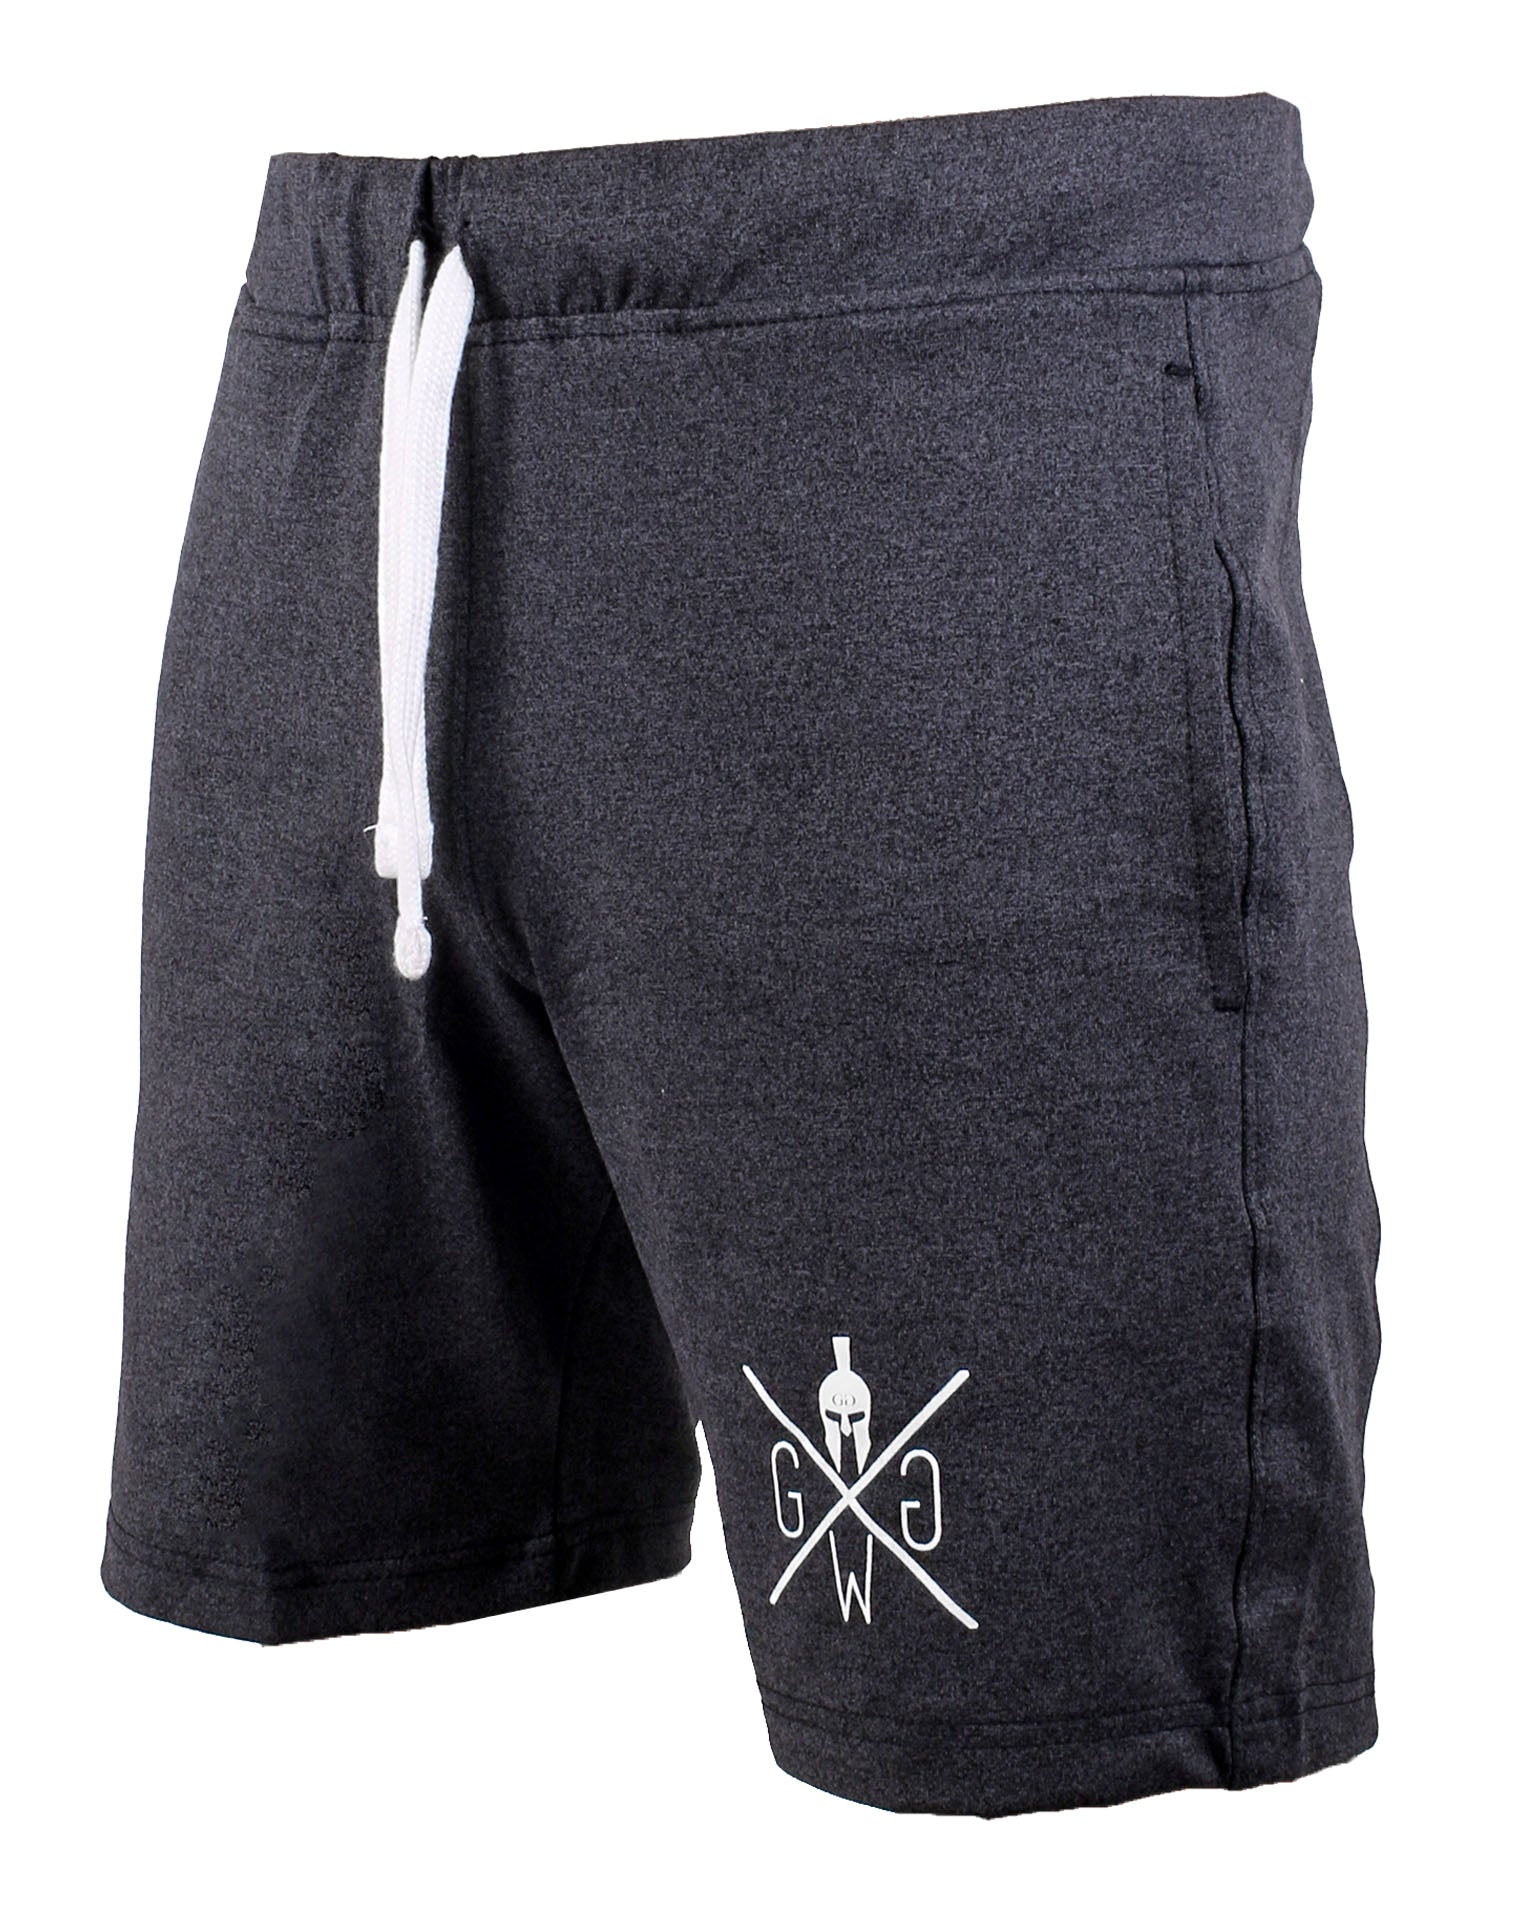 Gym Generation Sport Shorts in Dunkelgrau, mit praktischen Seitentaschen und gedrucktem Spartaner Logo für einen sportlichen Look.